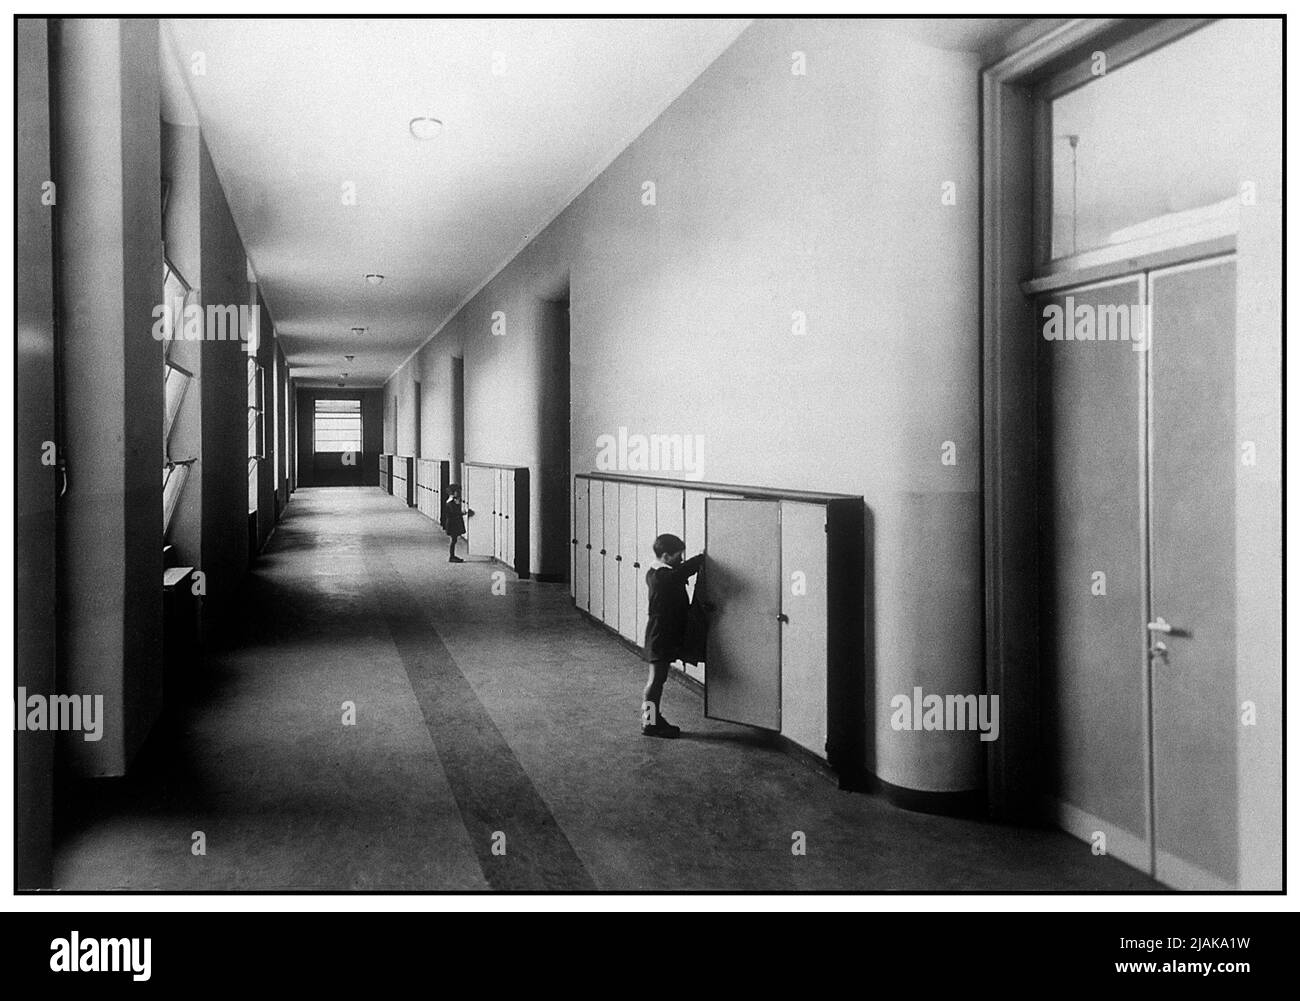 Firenze - Italia - Biblioteca di Documentazione Pedagogica - Corridoio e spogliatoio - scuola elementare di Valdagno (Vi) - 1930 Stock Photo